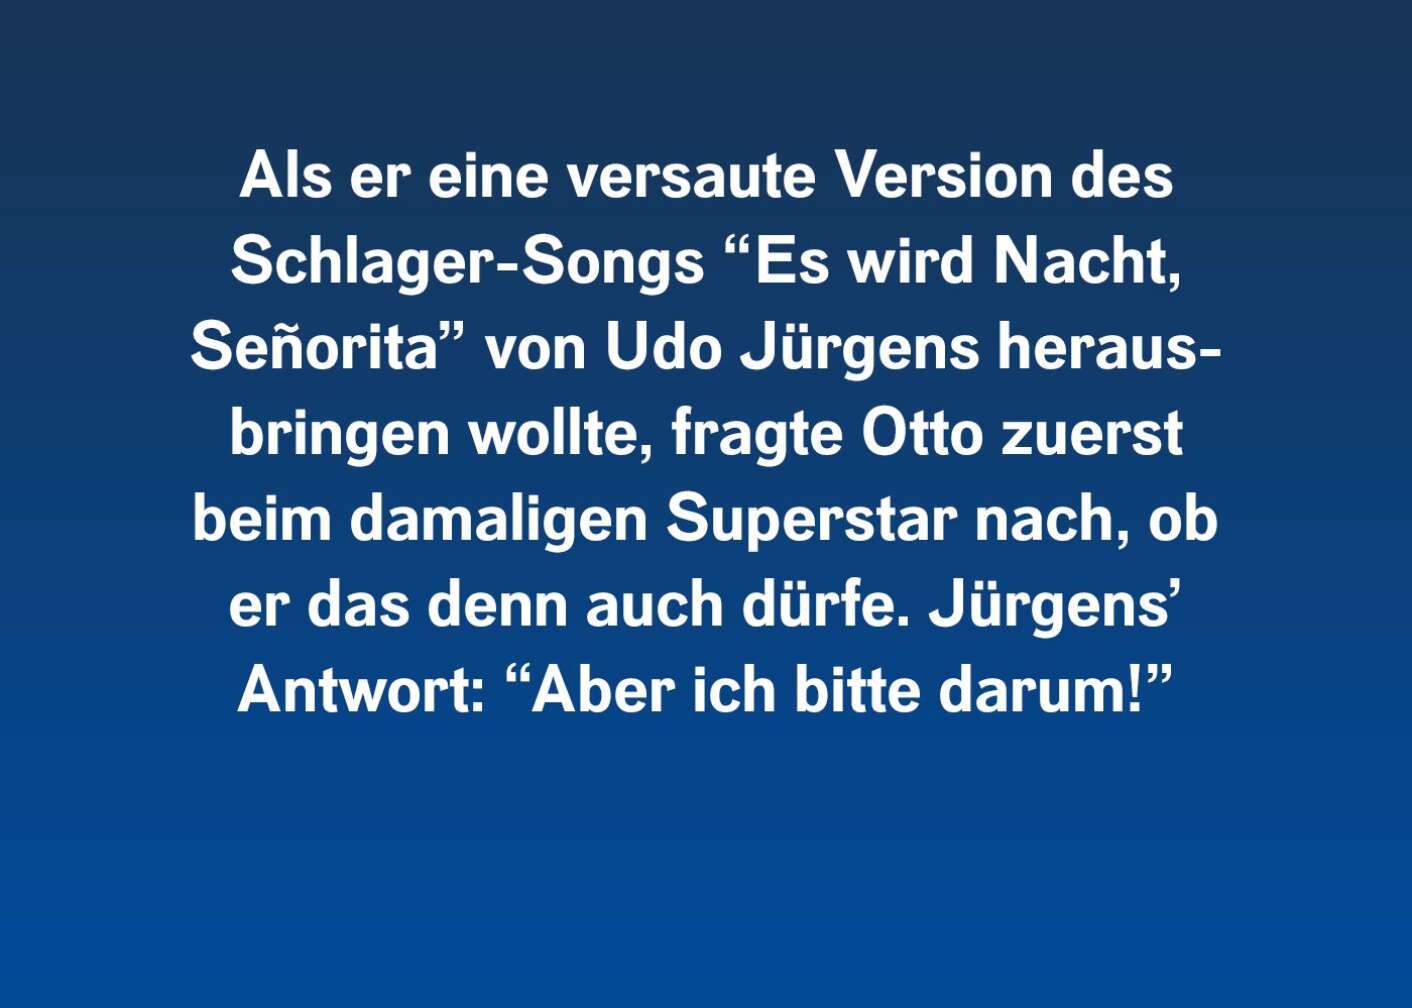 Als er eine versaute Version des Schlager-Songs "Es wird Nacht, Senorita" von Udo Jürgens herausbringen wollte, fragte Otto zuerst beim damaligen Superstar nach, ob er das denn auch dürfe. Jürgens' Antwort: "Aber ich bitte darum!"